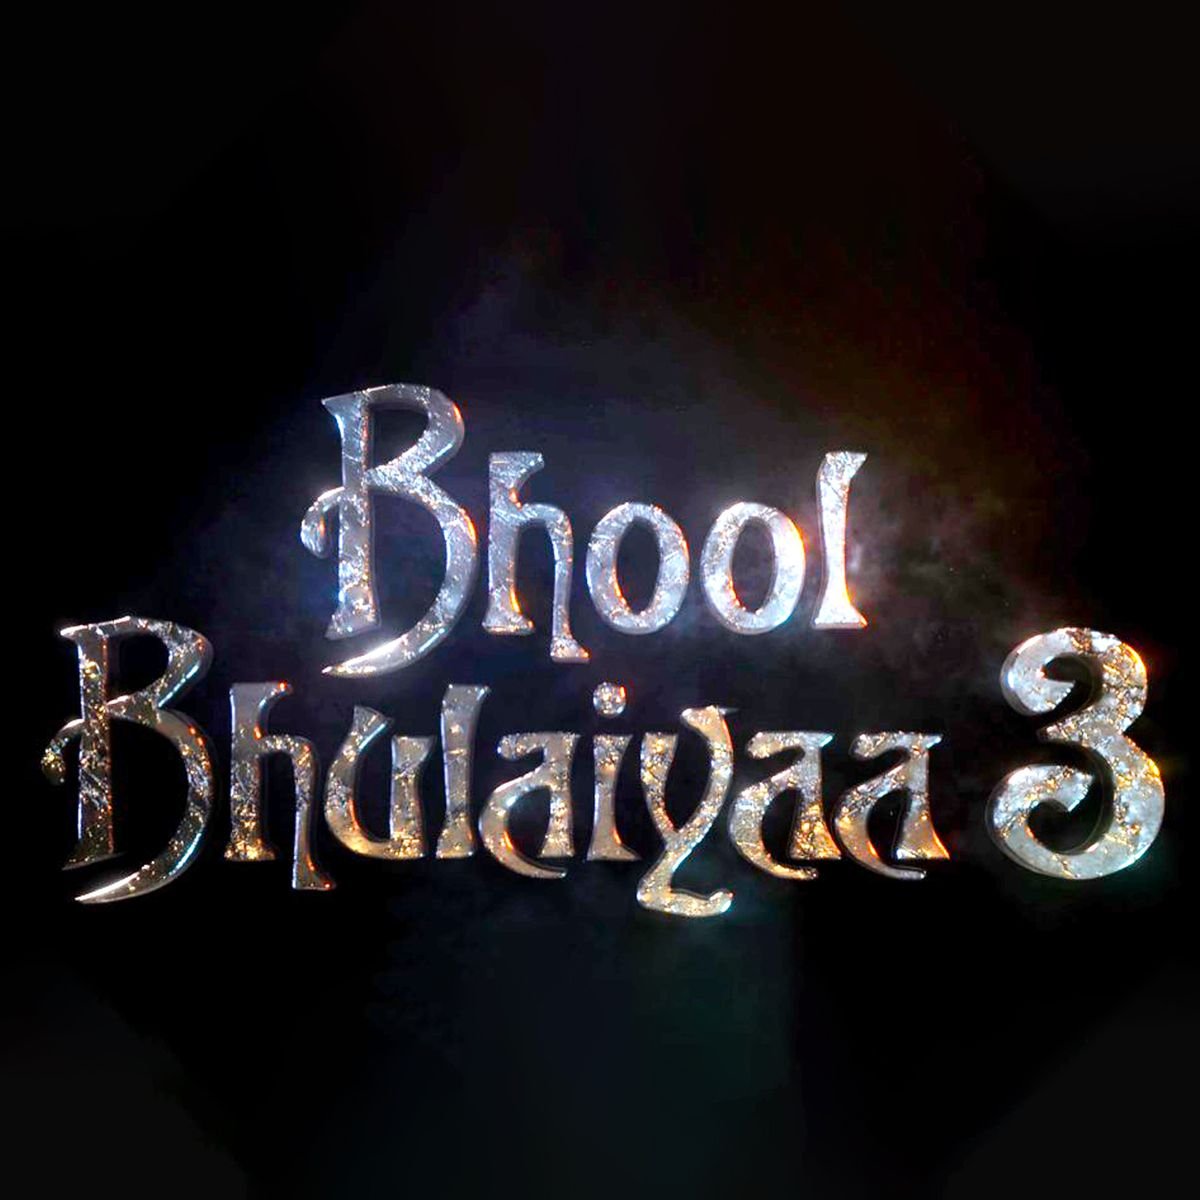 Bhool Bhbhulaiyaa